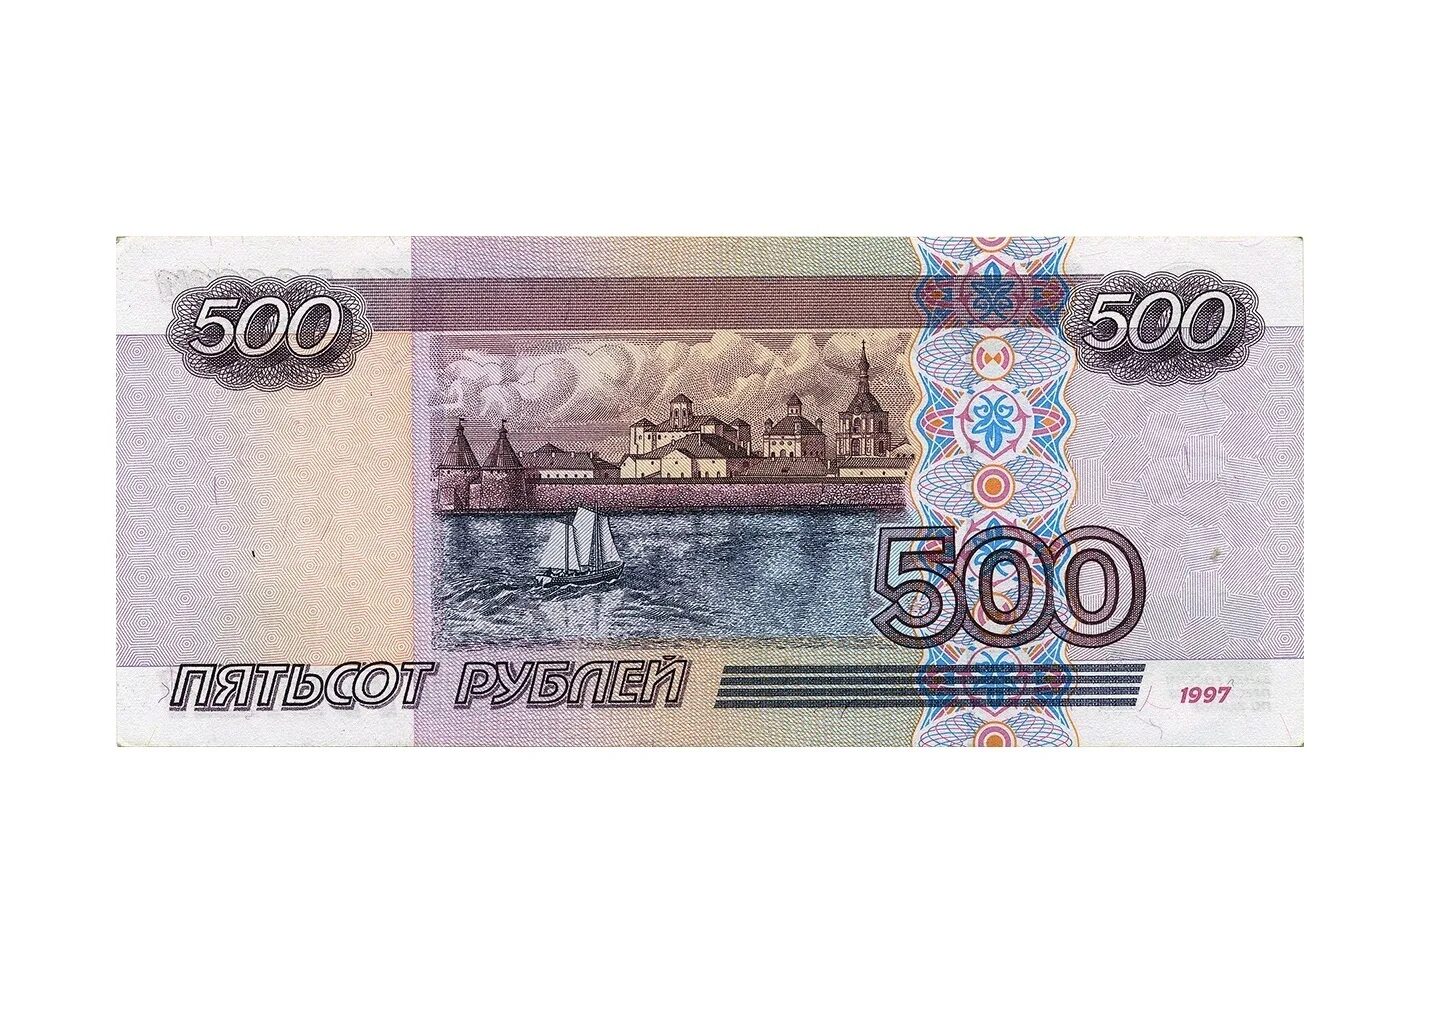 Две пятьсот рублей. Российские купюры 500 рублей. Купюры денег 500 рублей.